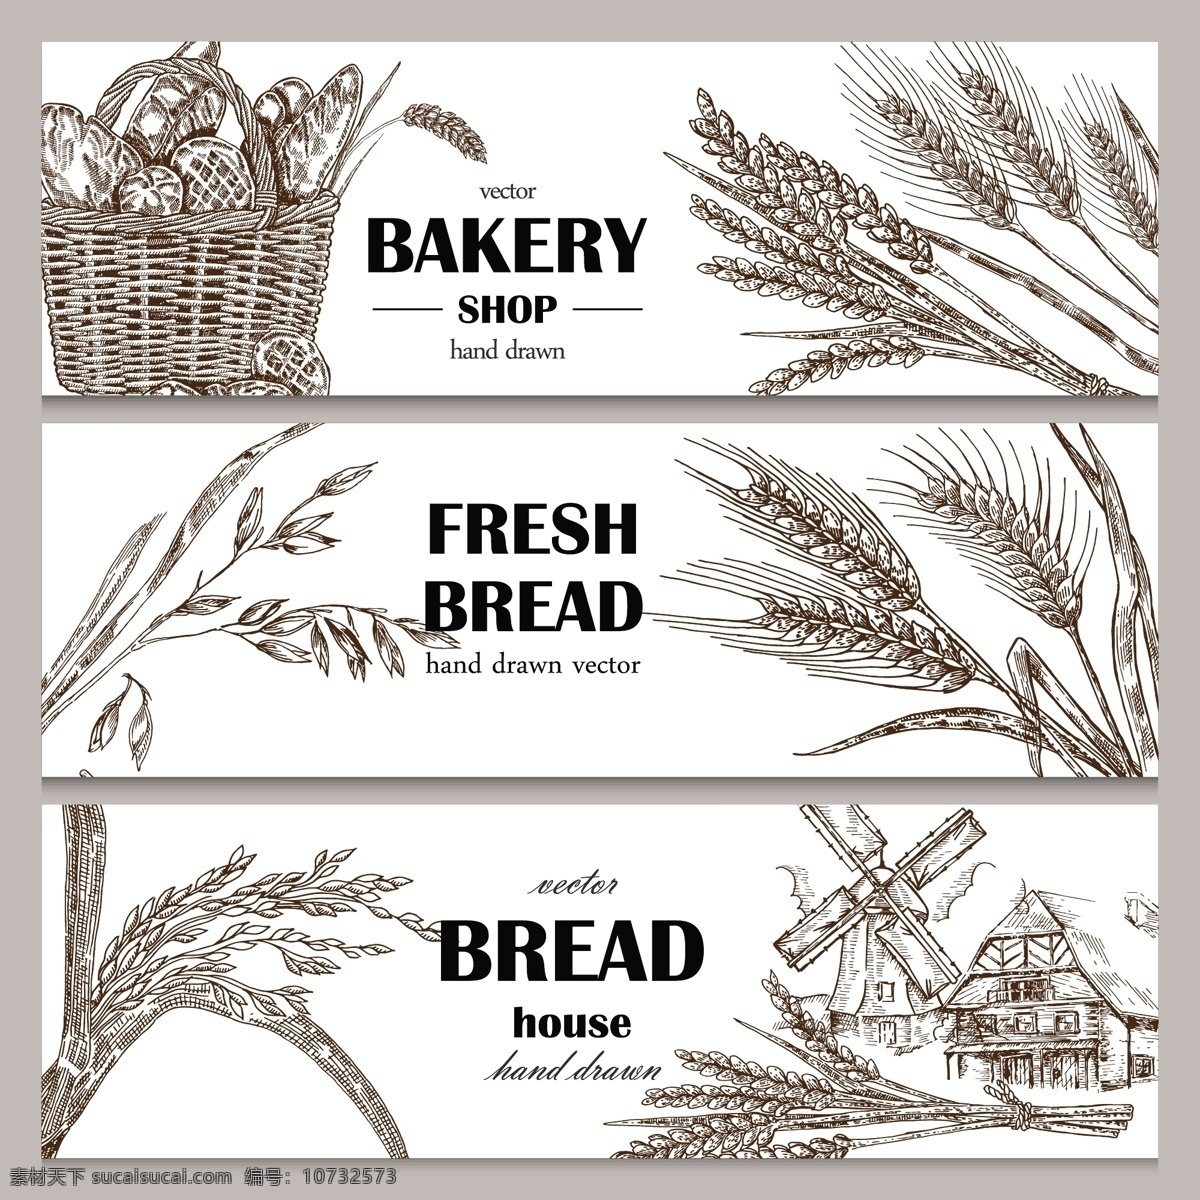 面包 横幅 海报 背景 小麦 麦穗 麦子 面包插画 全麦面包 篮子 横幅海报 美食插画 餐饮美食 生活百科 矢量素材